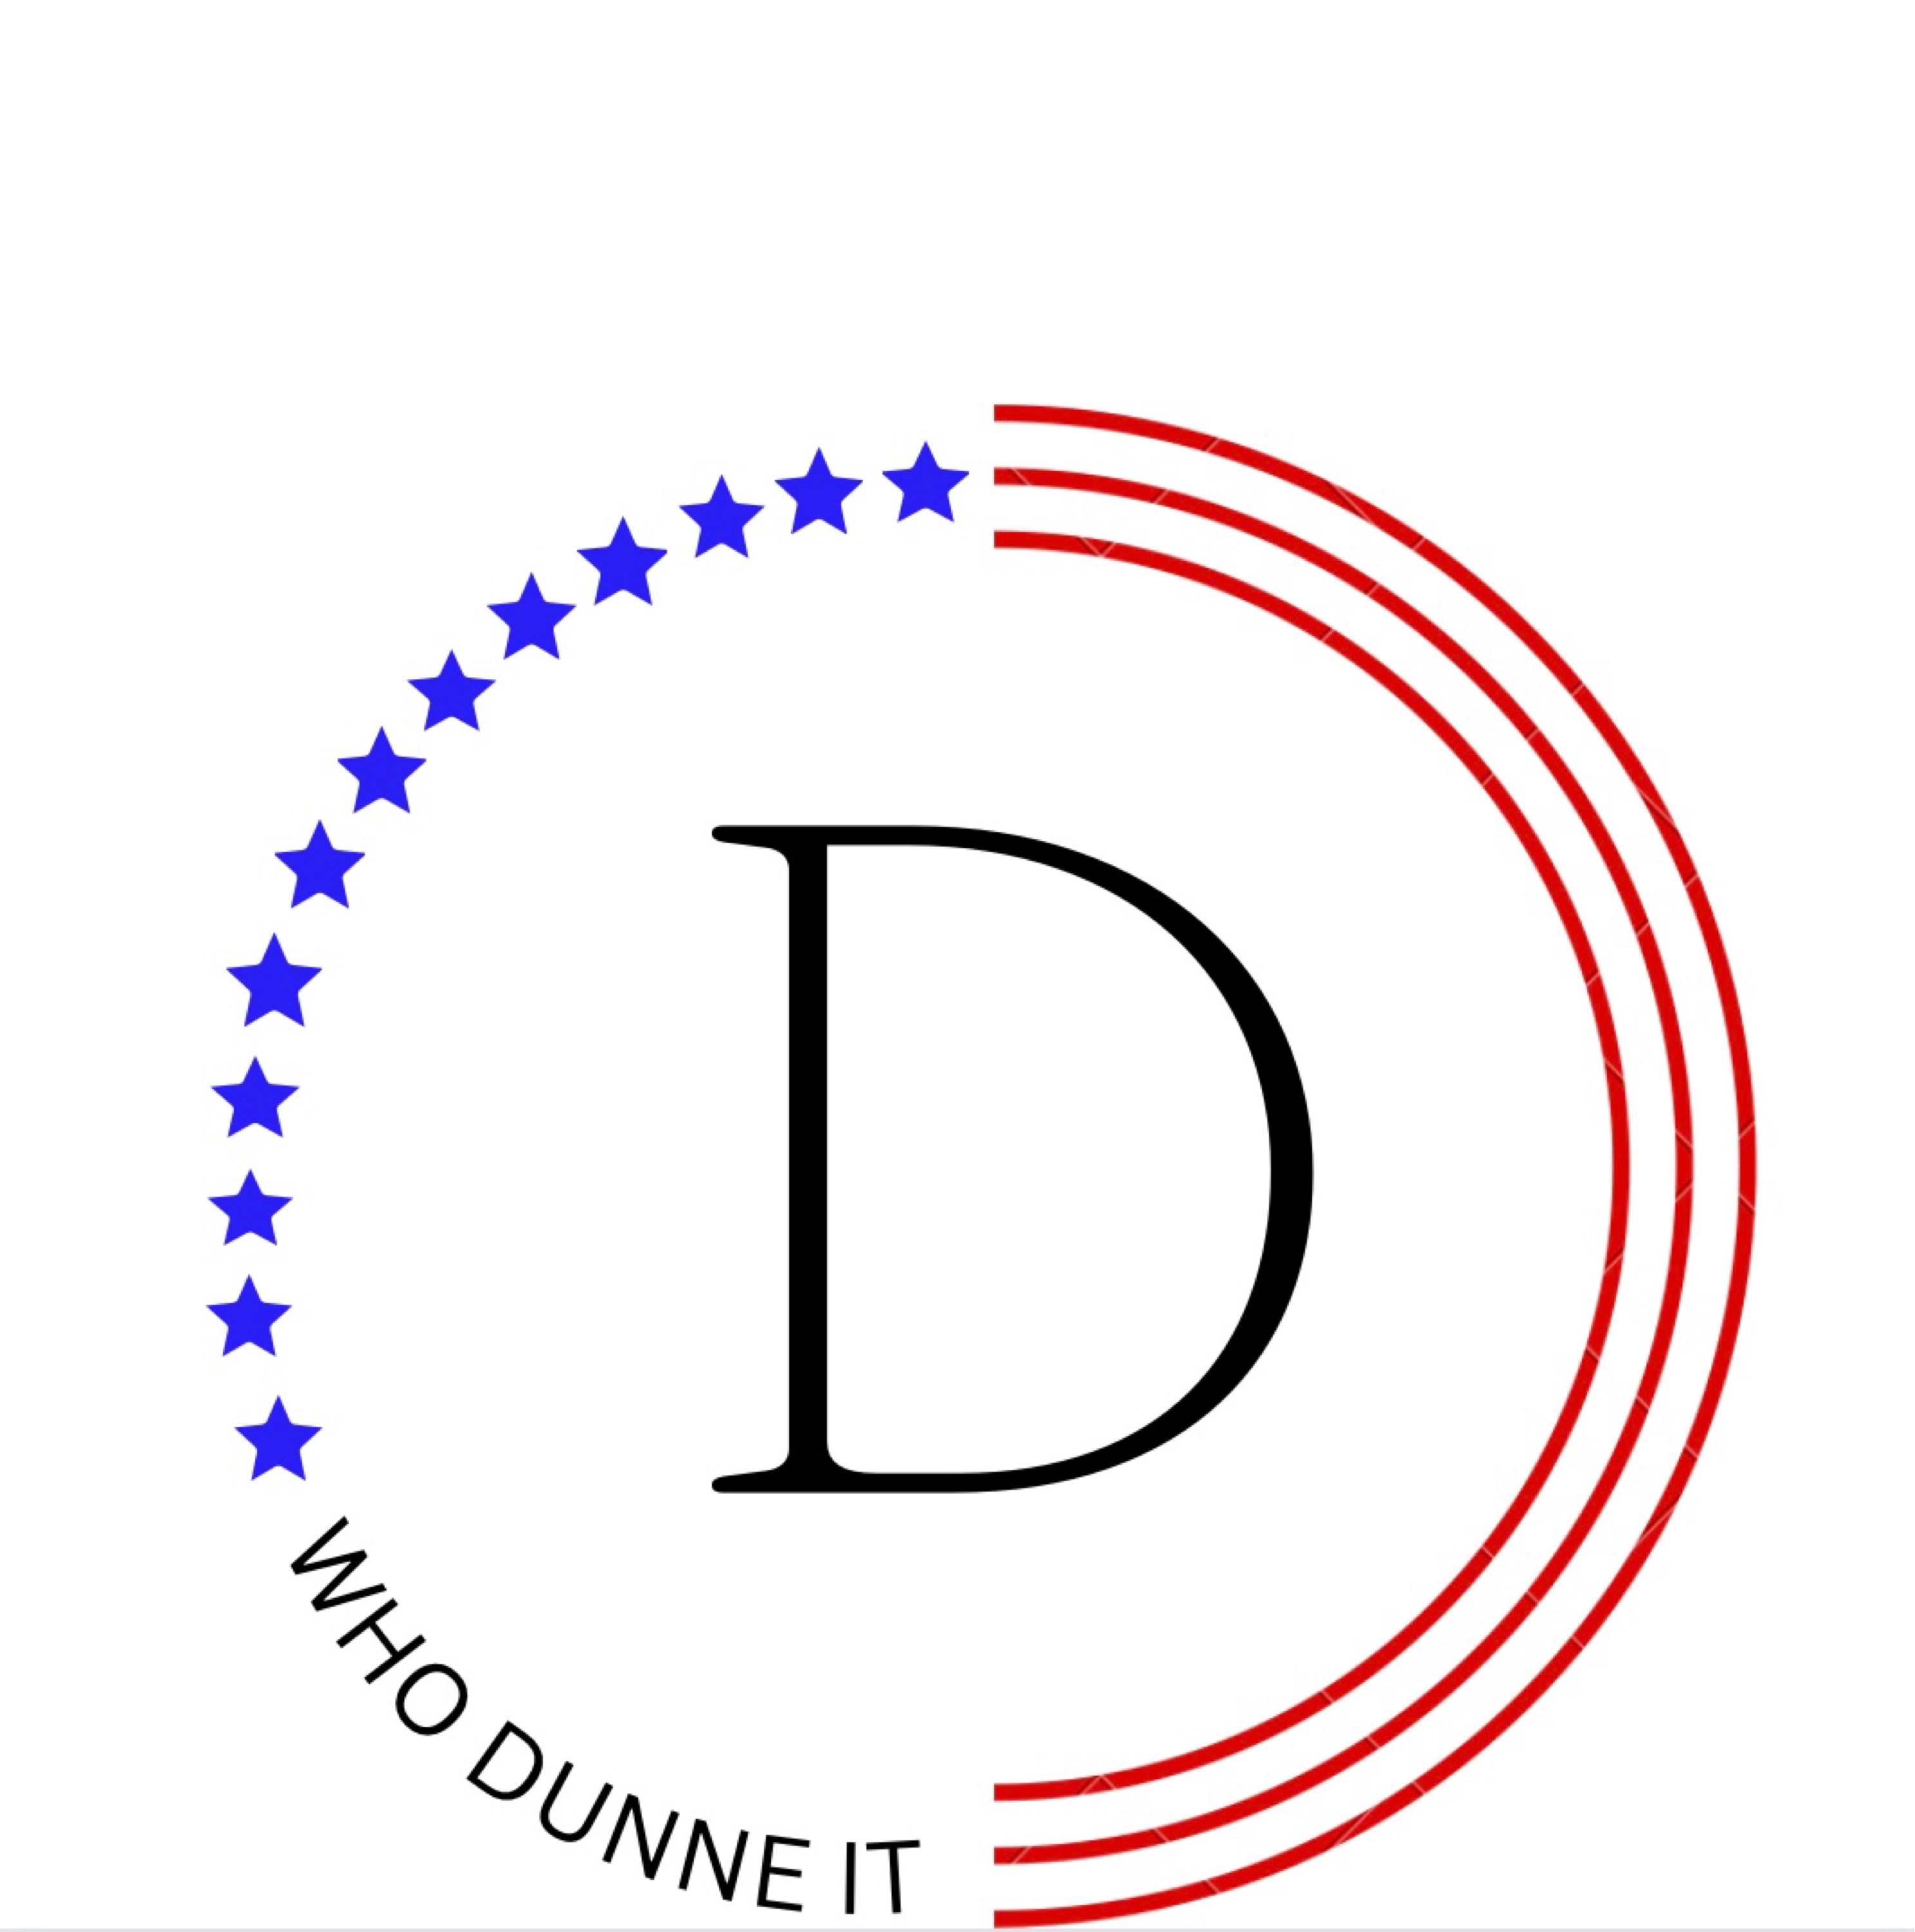 Who Dunne It Logo